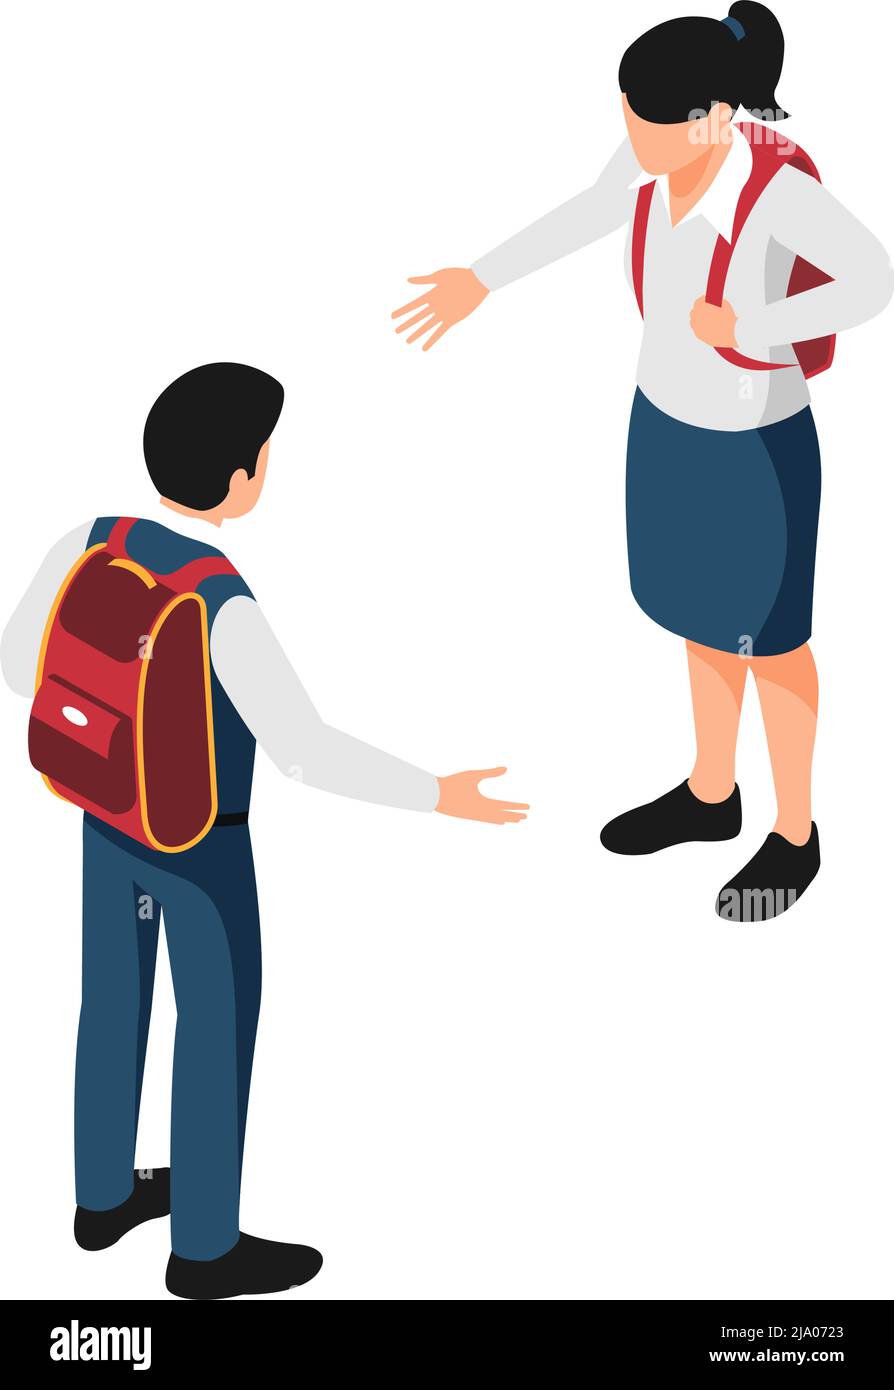 Isometrisches Symbol mit zwei Schülern in Schuluniform, die sich gegenseitig begrüßen Vektorgrafik Stock Vektor